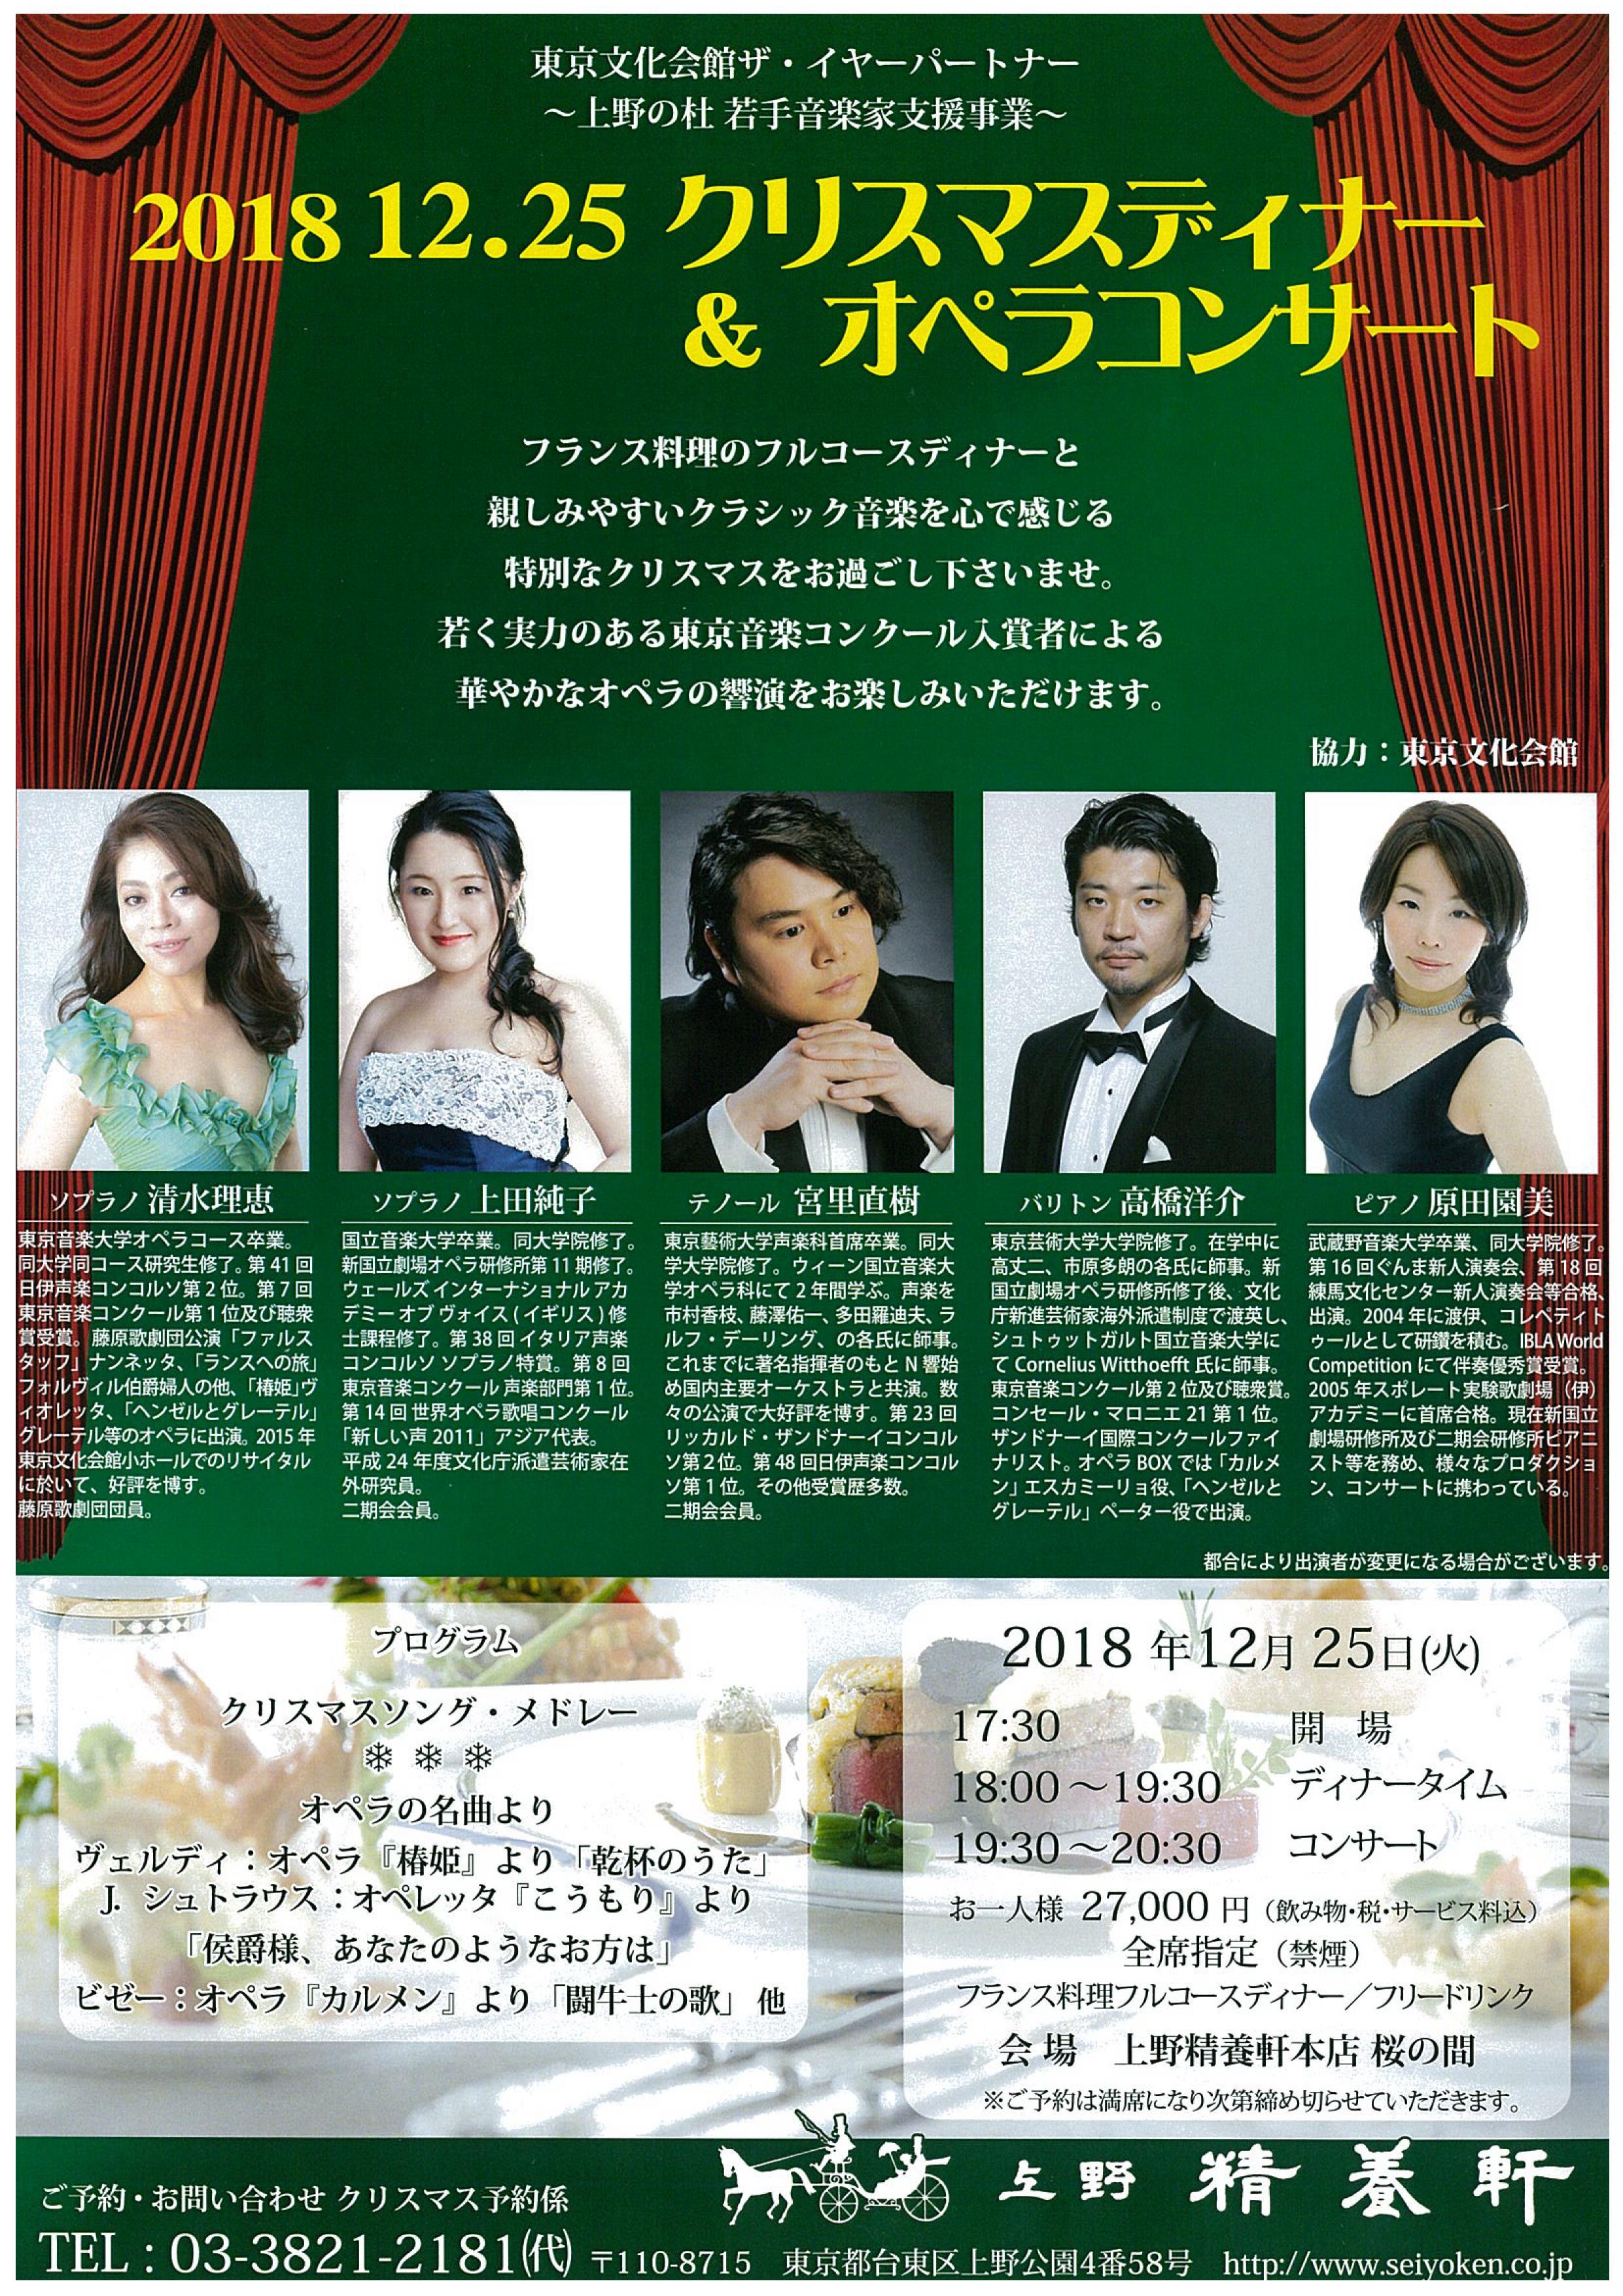 12 25 上野精養軒クリスマスディナー オペラコンサート 高橋洋介バリトンwebsite